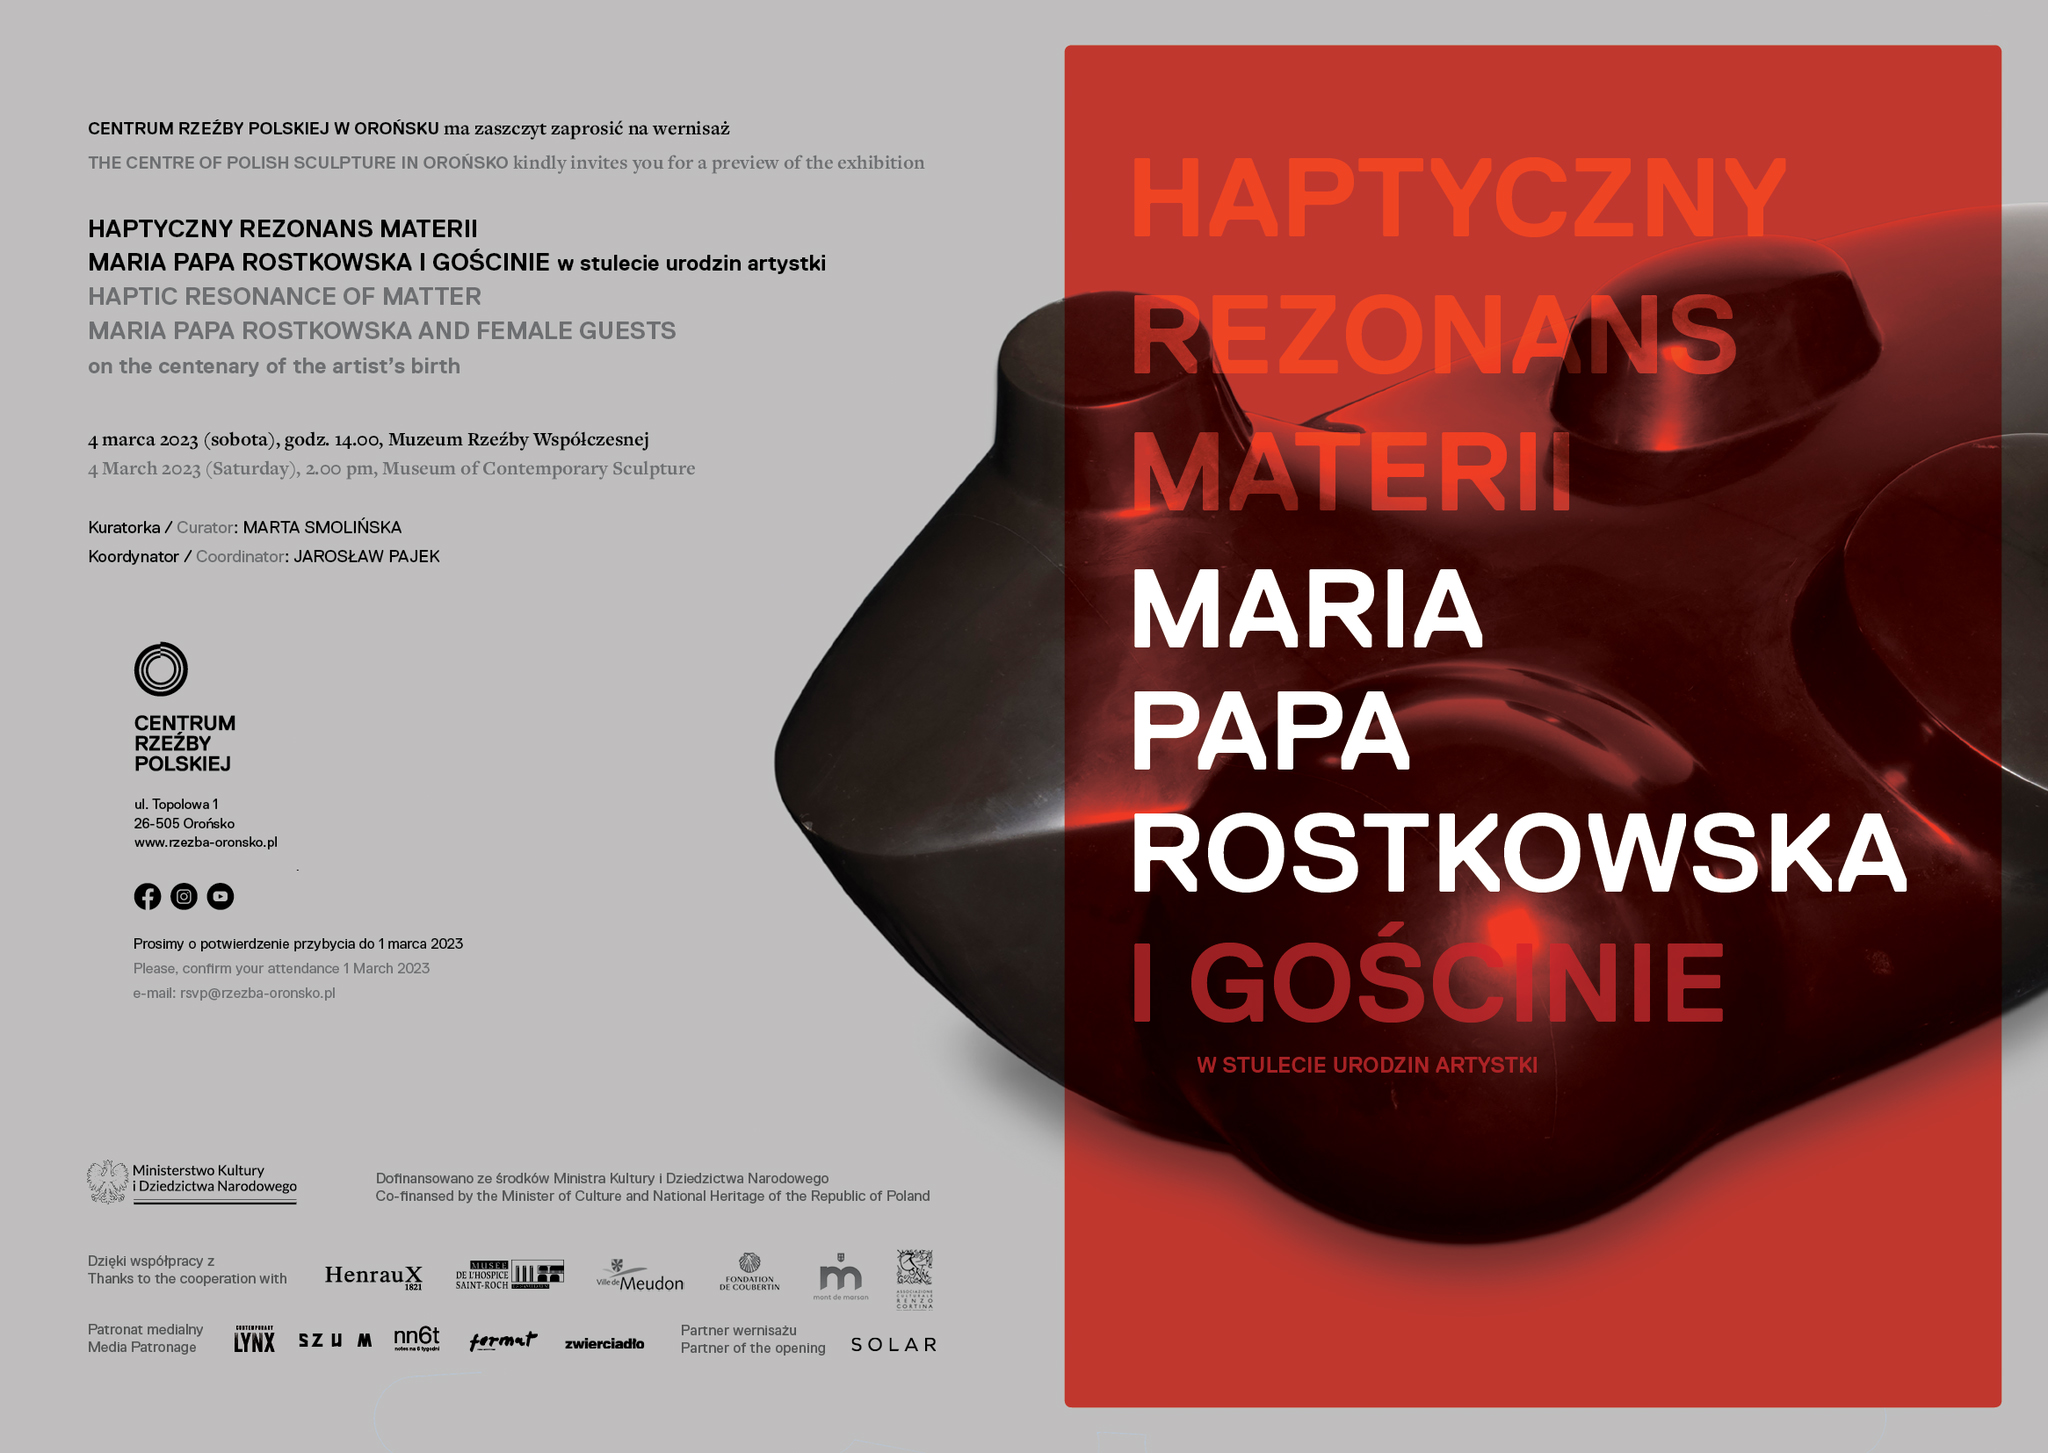 Plakat do wystawy "Haptyczny rezonans materii"